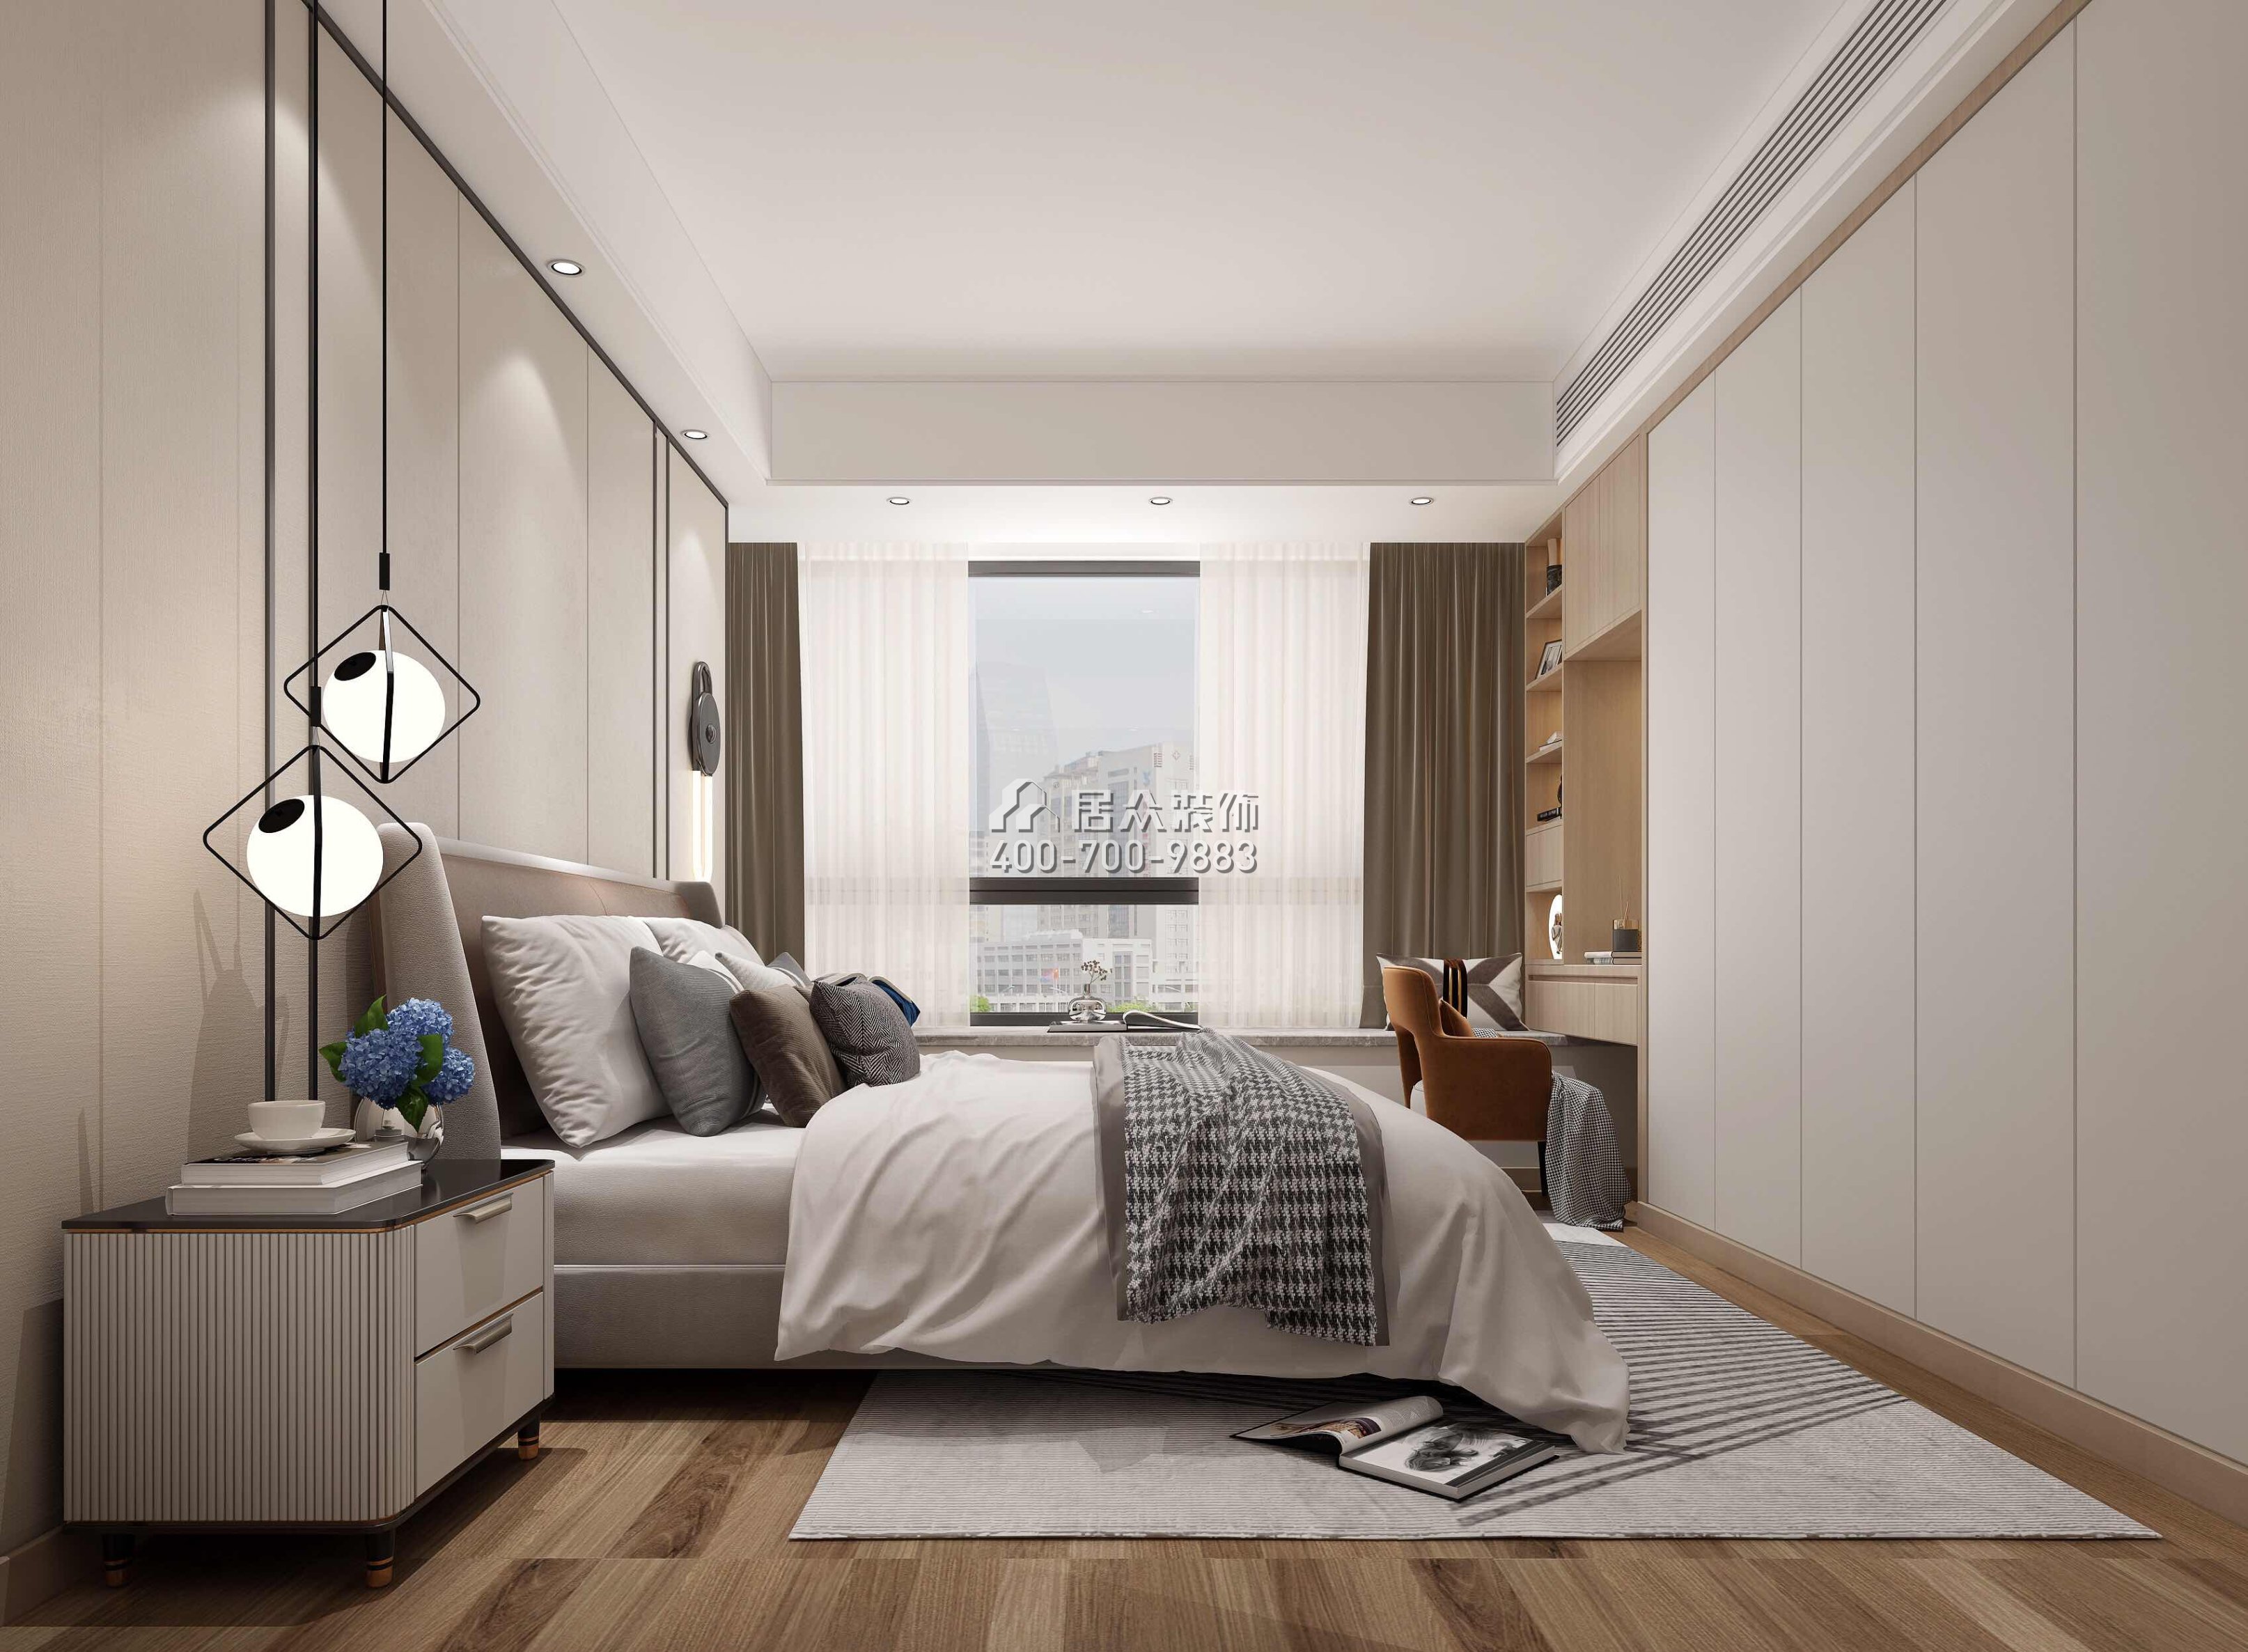 鼎峰尚境155平方米現代簡約風格平層戶型臥室裝修效果圖